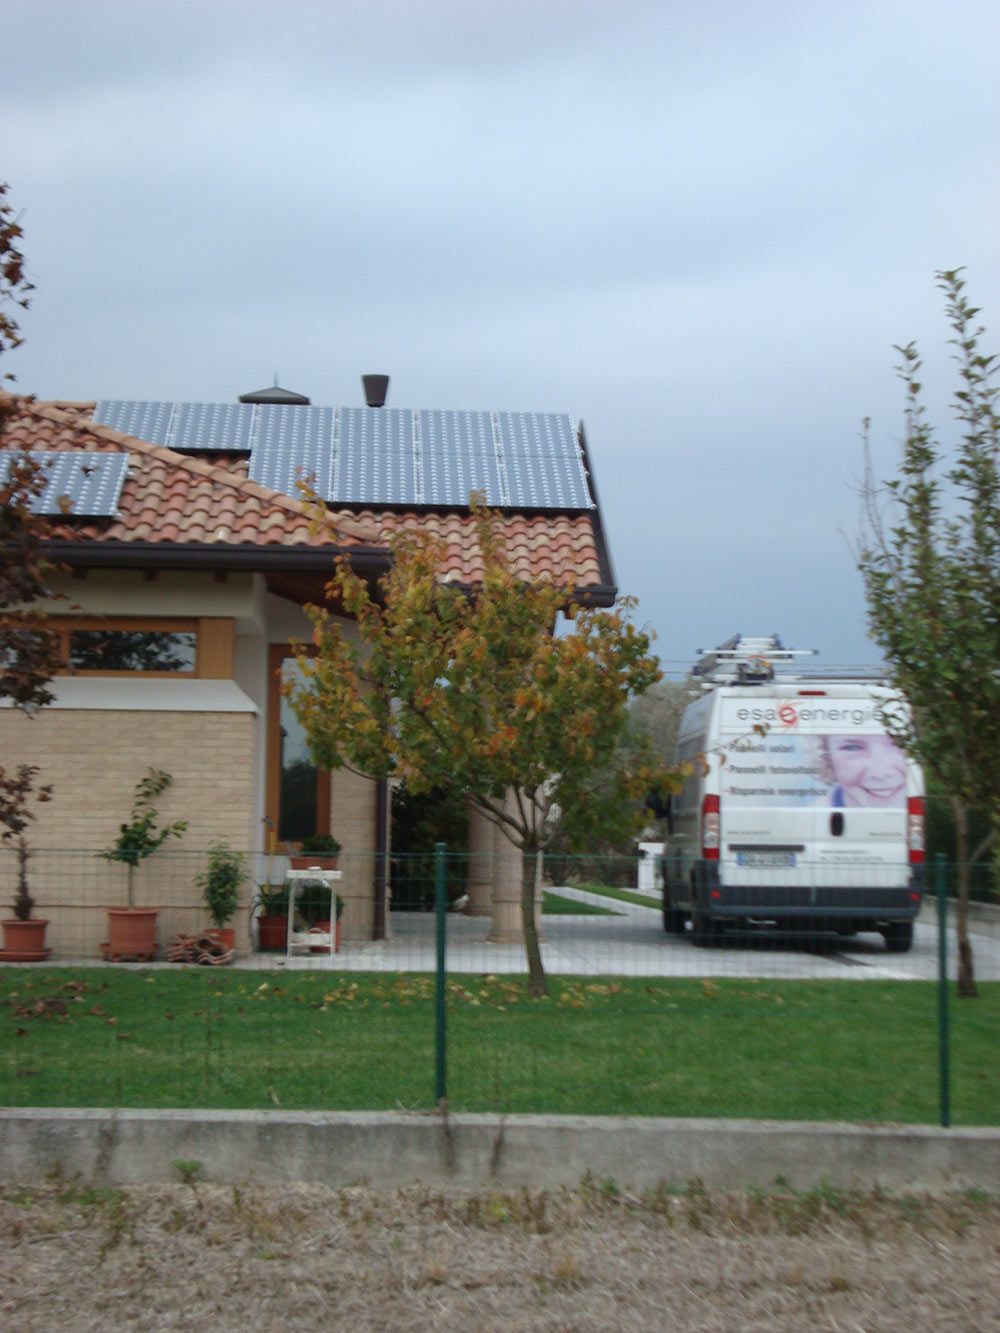 Impianti fotovoltaici a Fiume Veneto